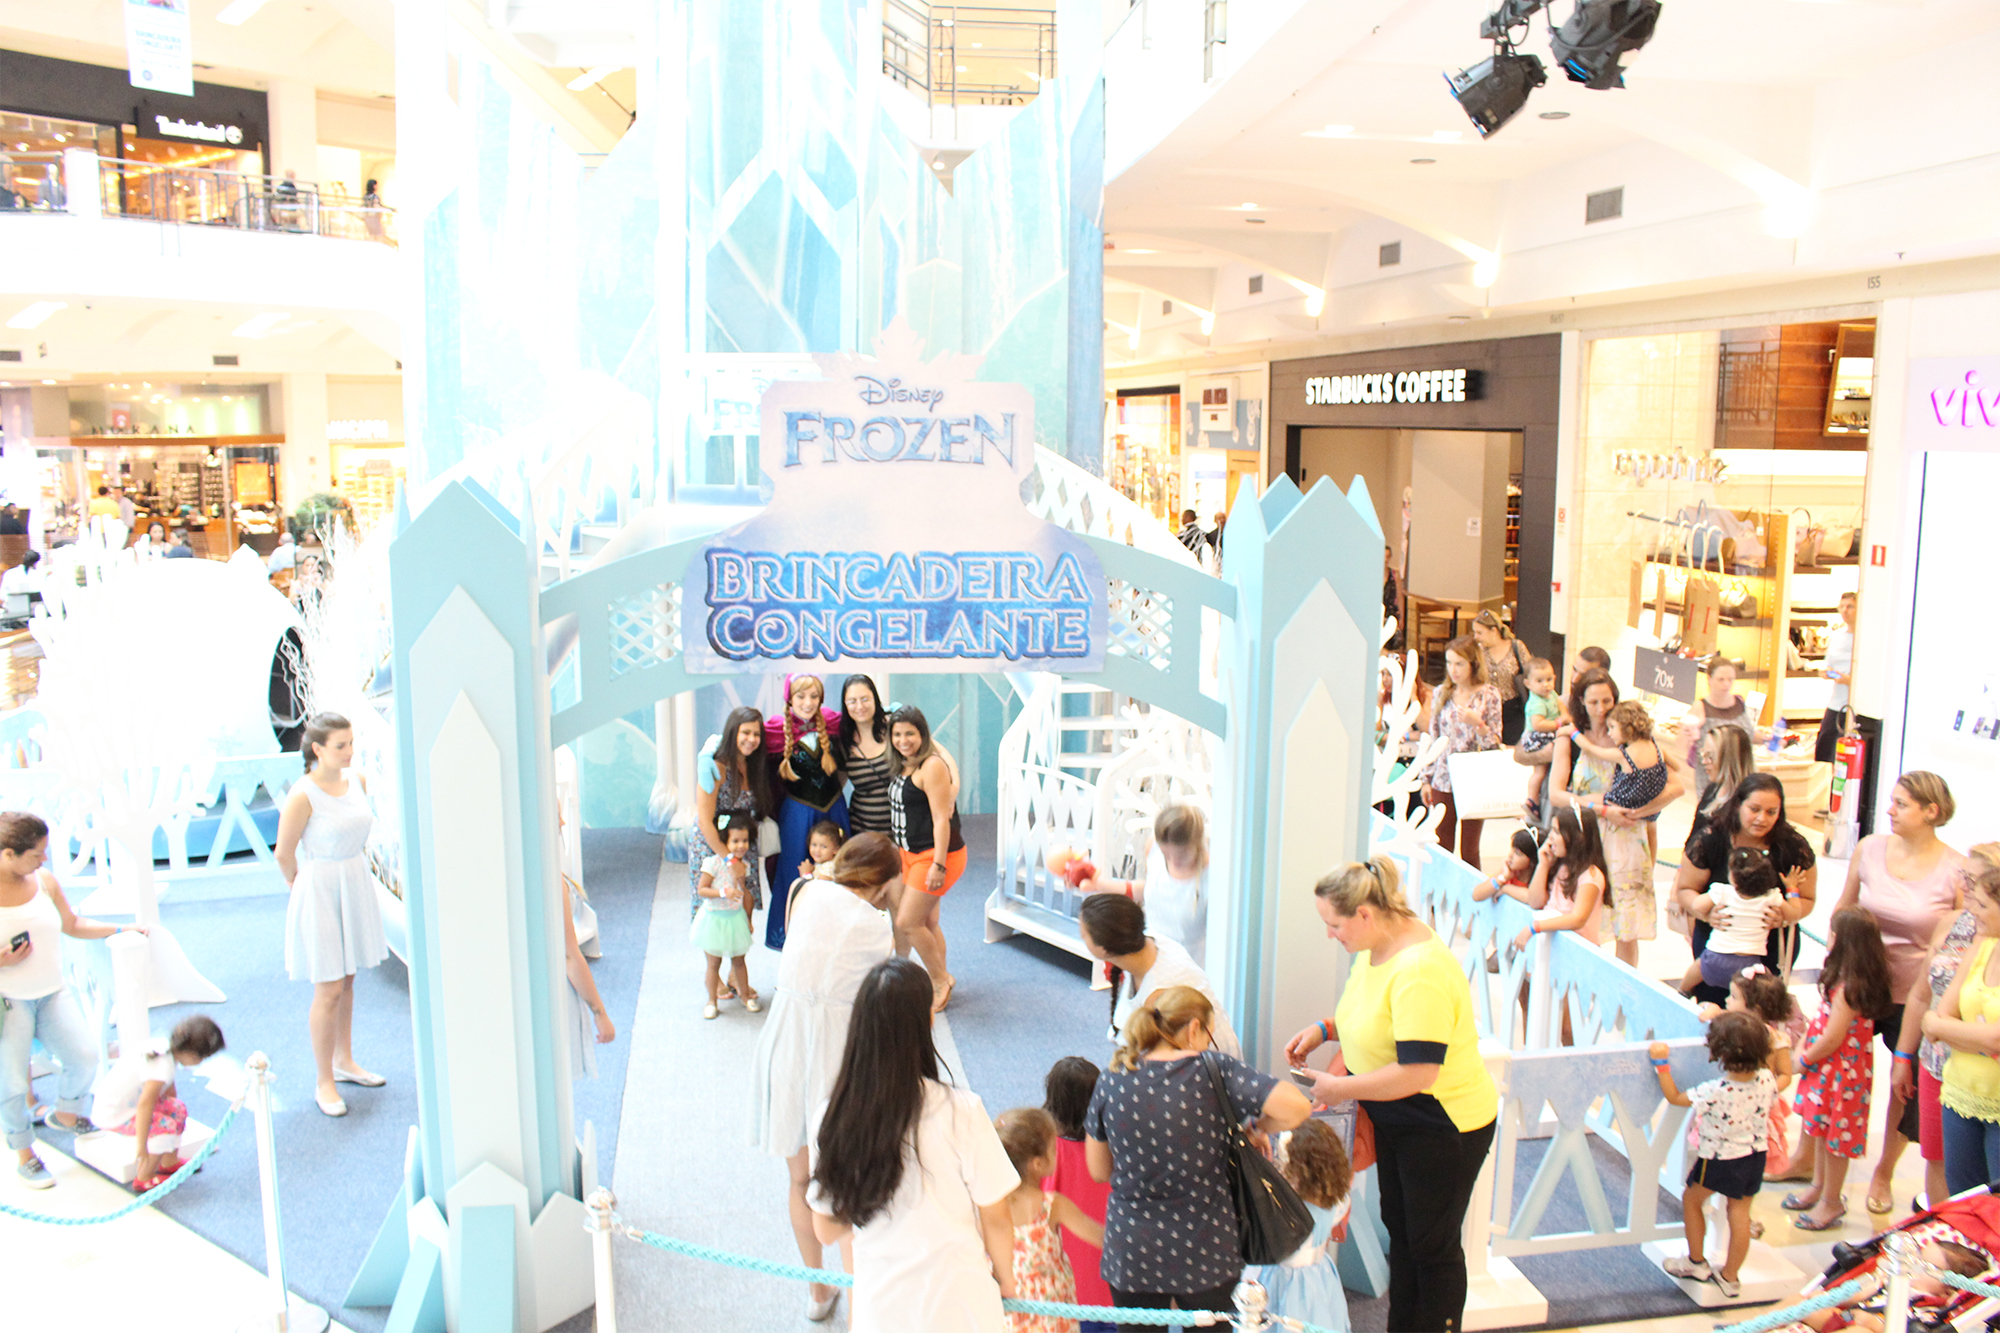 Shopping VillaLobos traz brincadeira congelante de Frozen para toda família